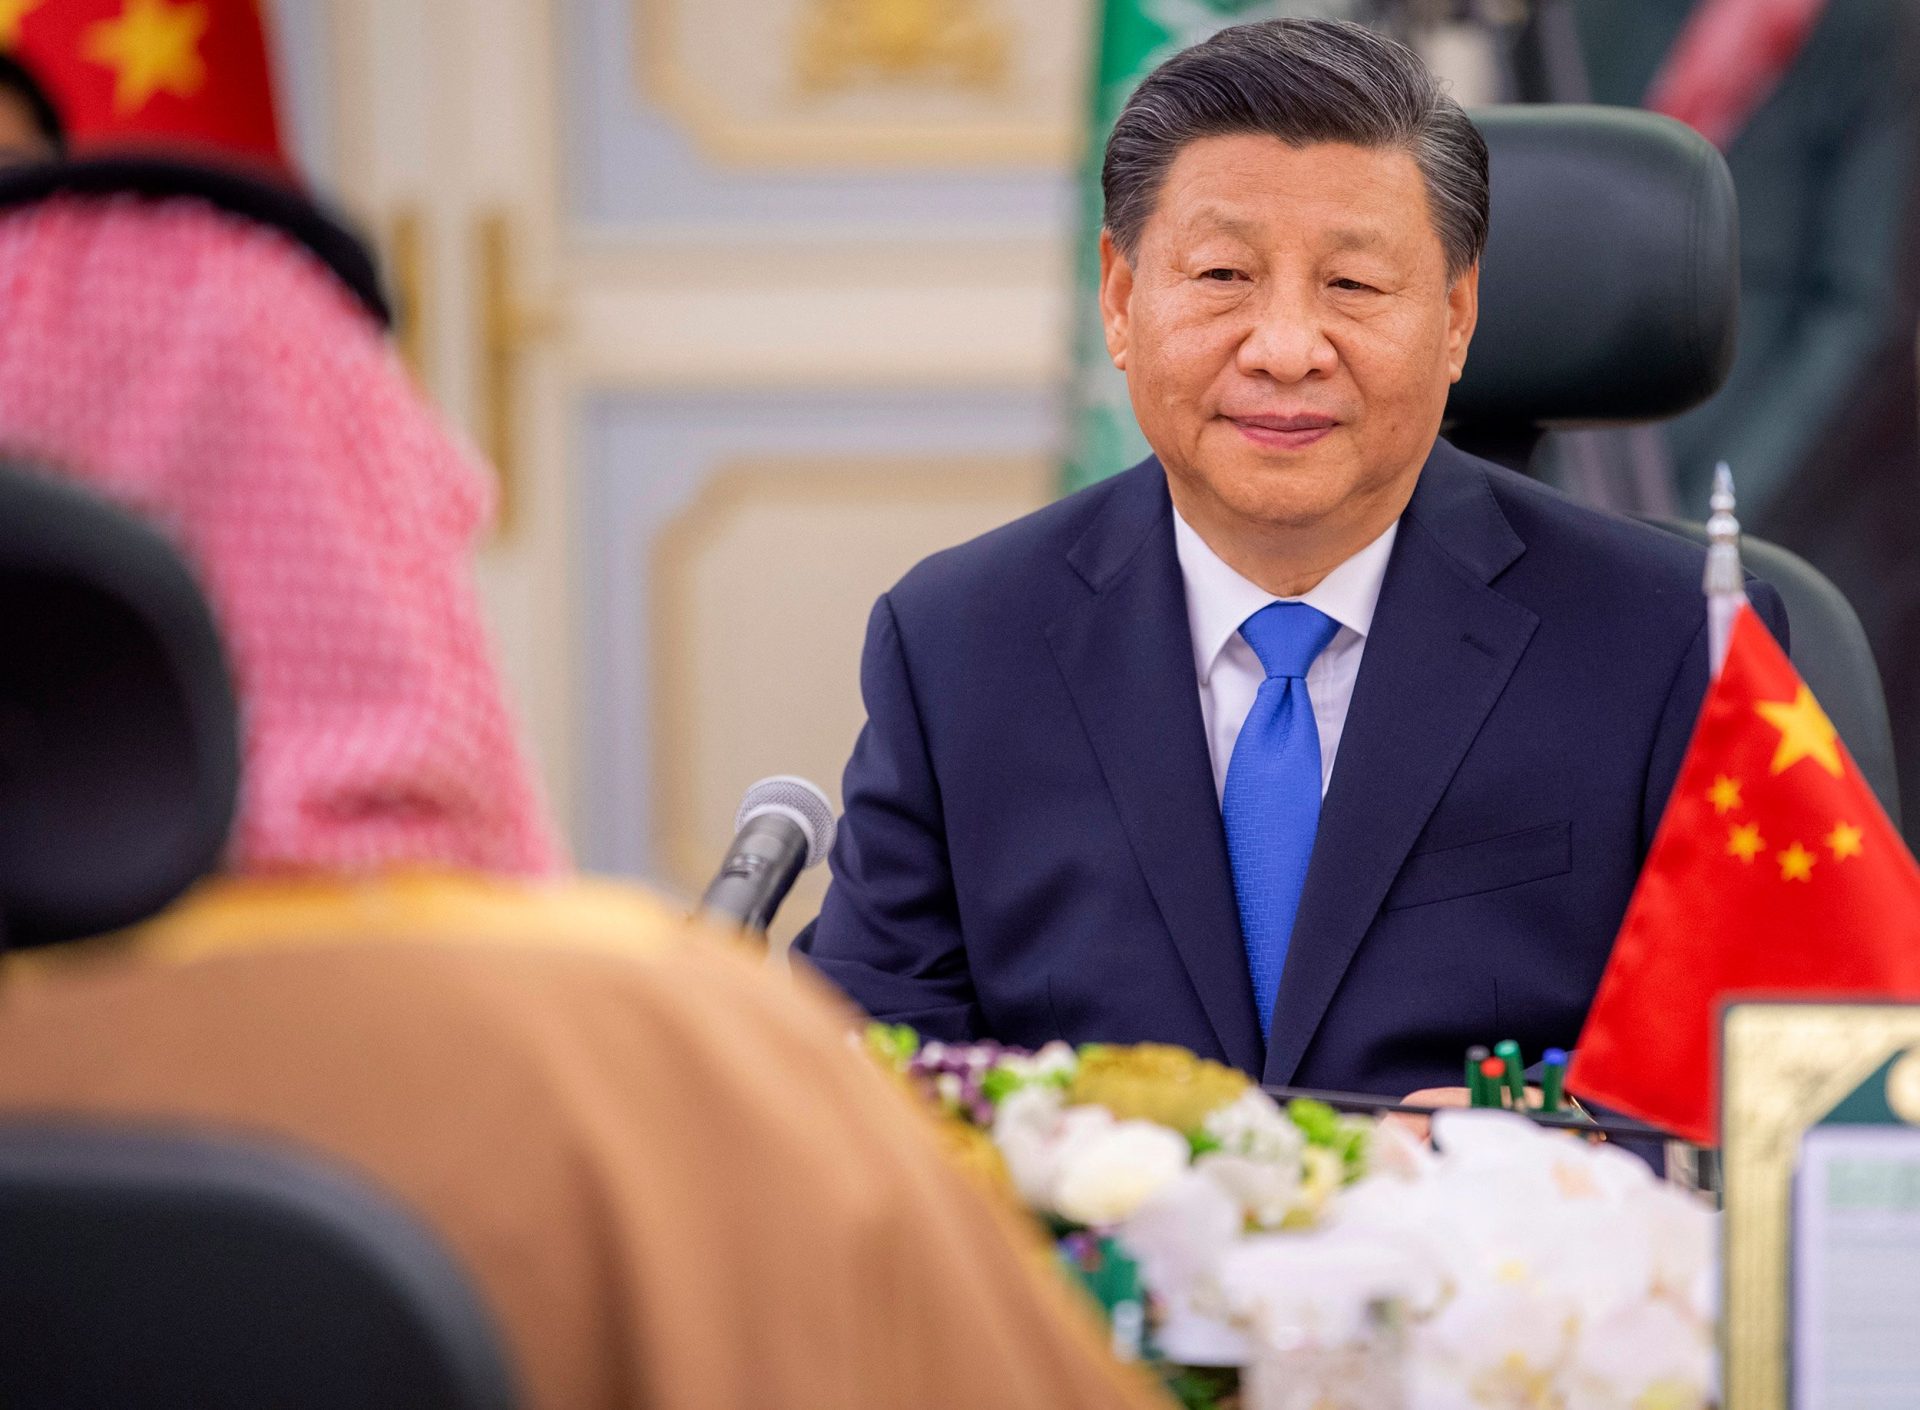 Confiança e apoio mútuo caracterizam as relações entre a China e os países árabes